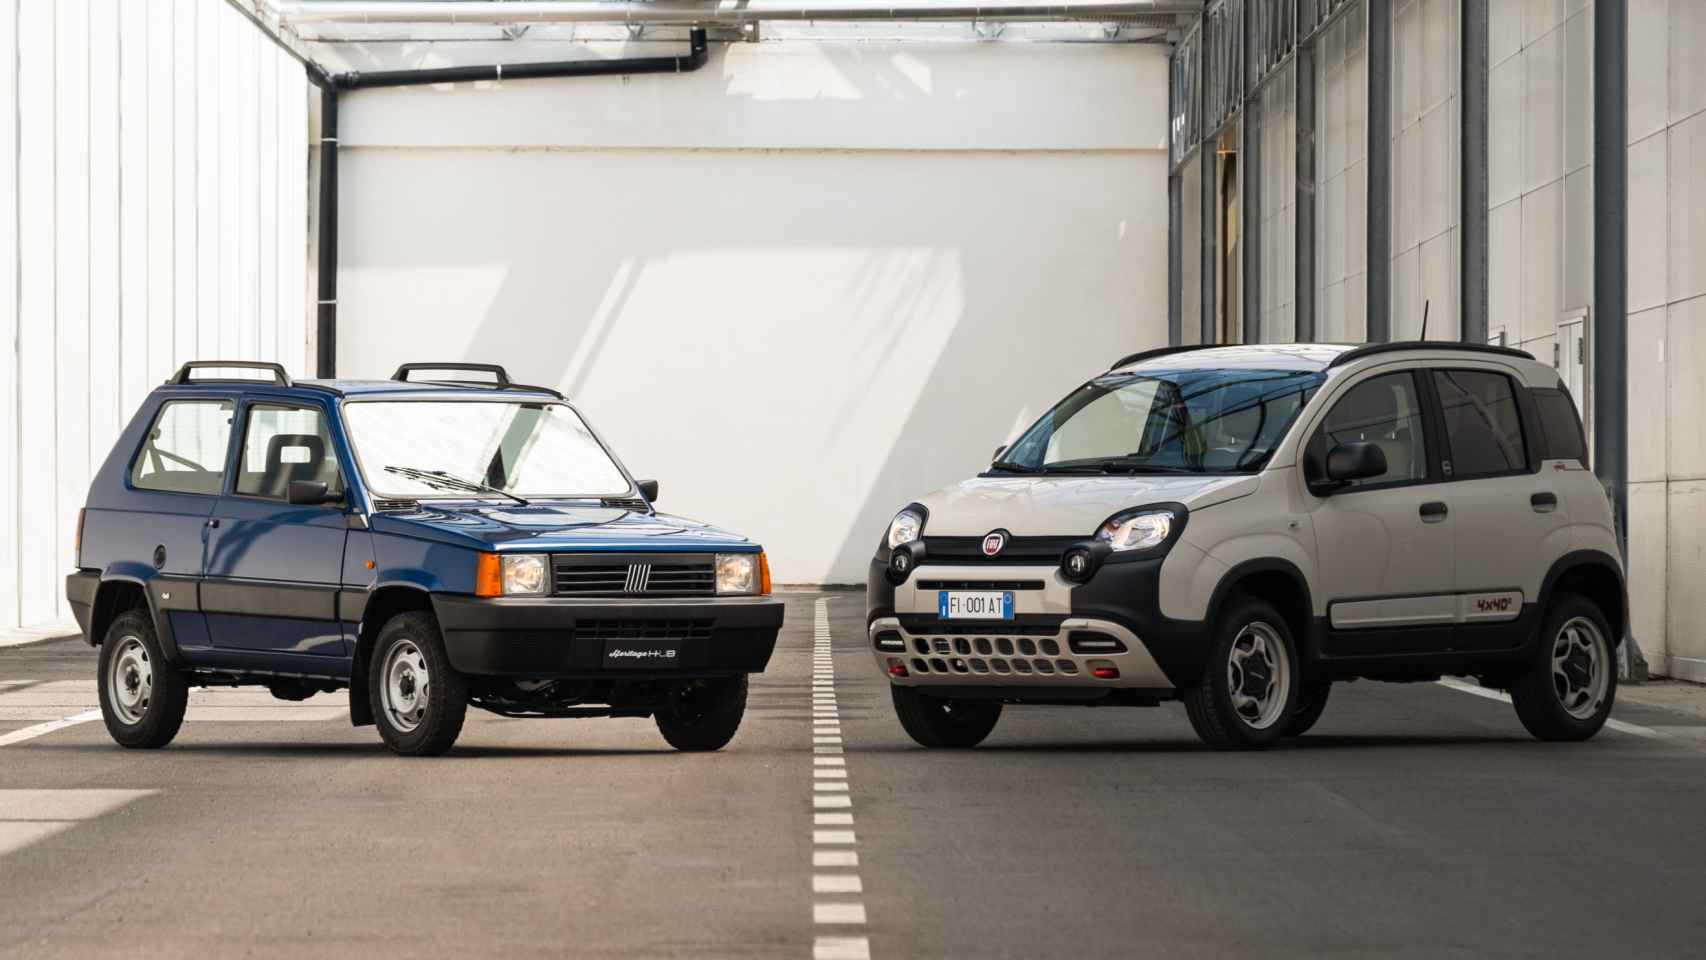 Fiat Panda de primera generación (izquierda) y Fiat Panda Hybrid (derecha).